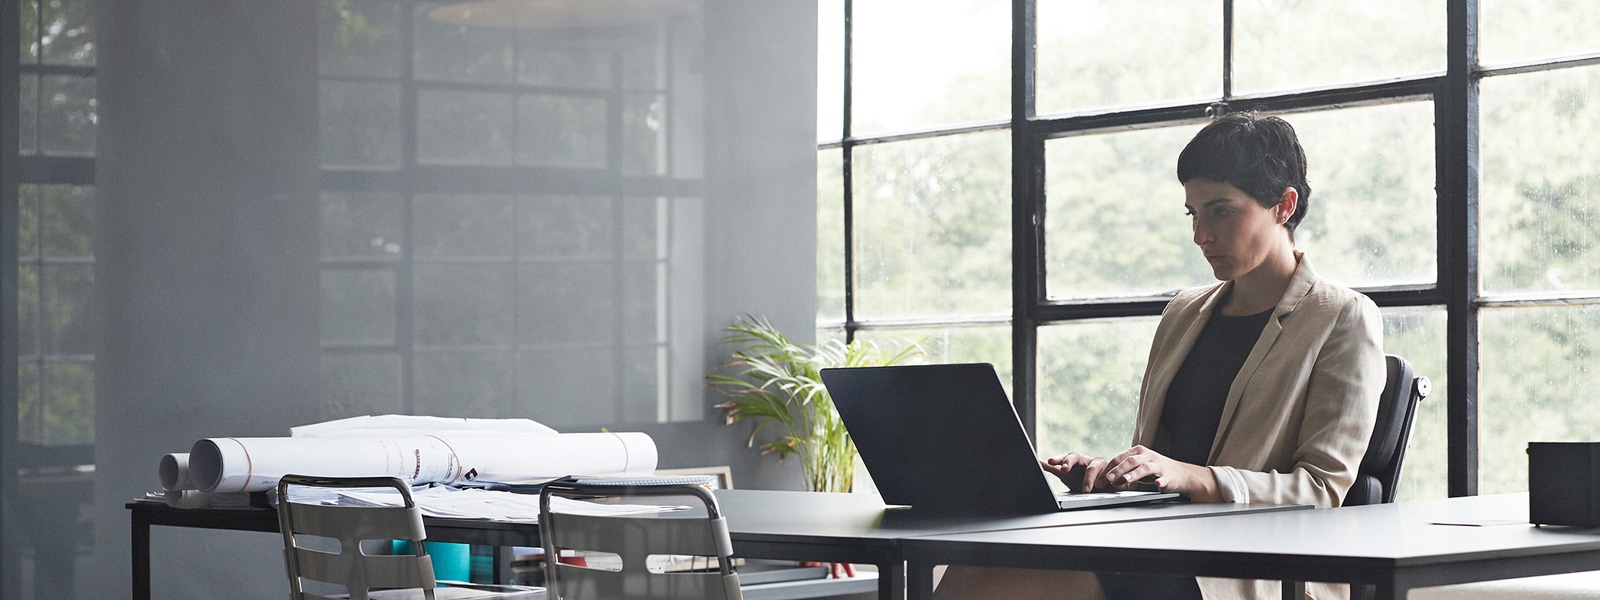 Uma mulher está sentada a uma mesa longa e digitando em um laptop em um escritório moderno com paredes de vidro.